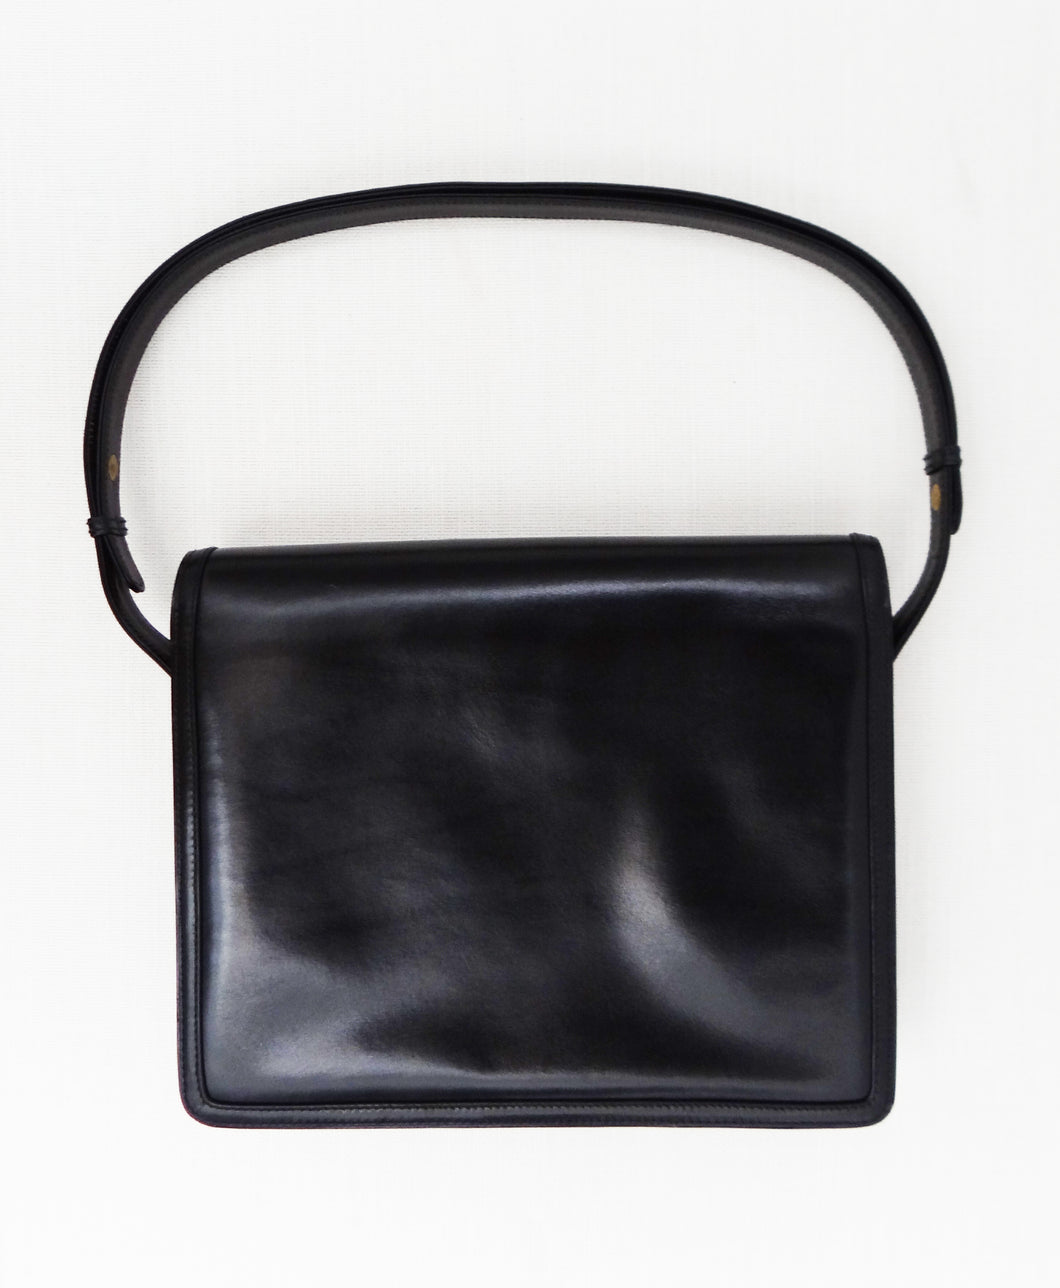 Vintage Gucci Handbag in Black Leather, c.1960s – Menage Modern